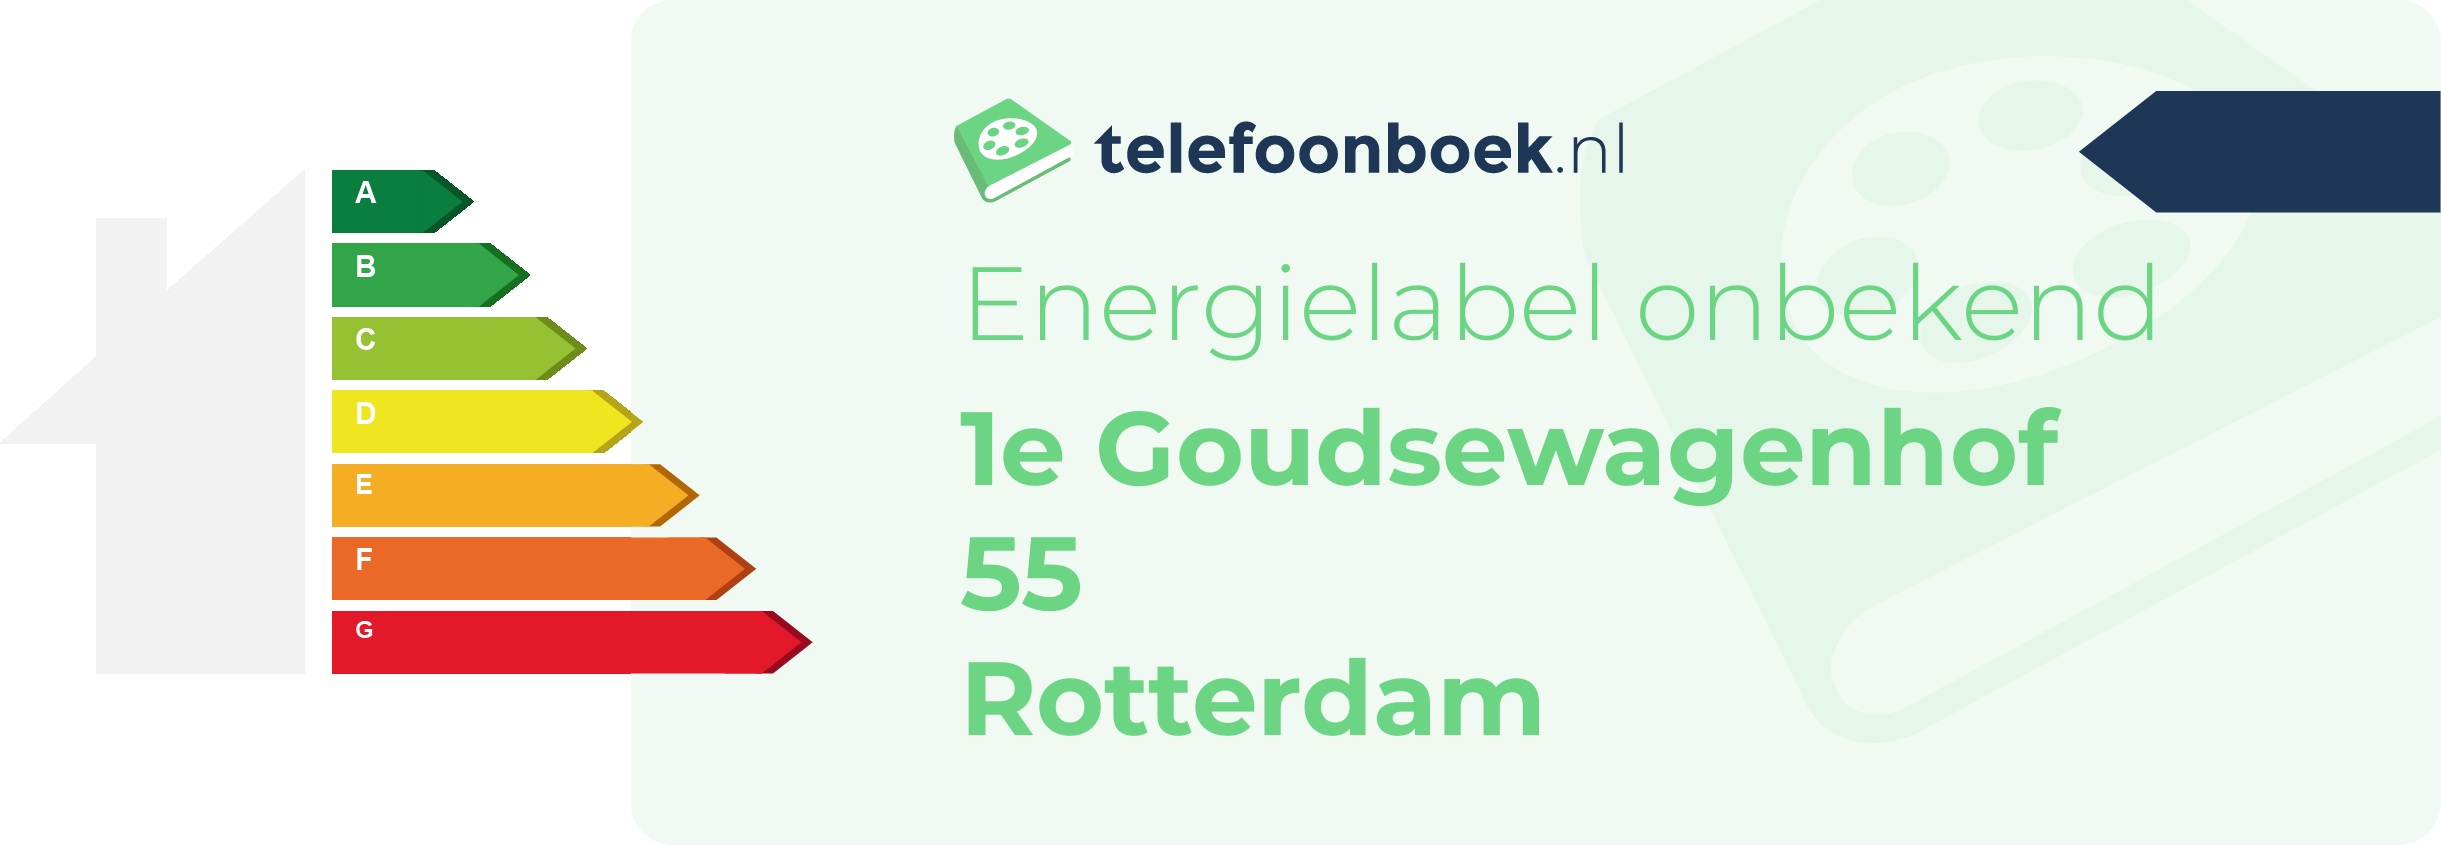 Energielabel 1e Goudsewagenhof 55 Rotterdam